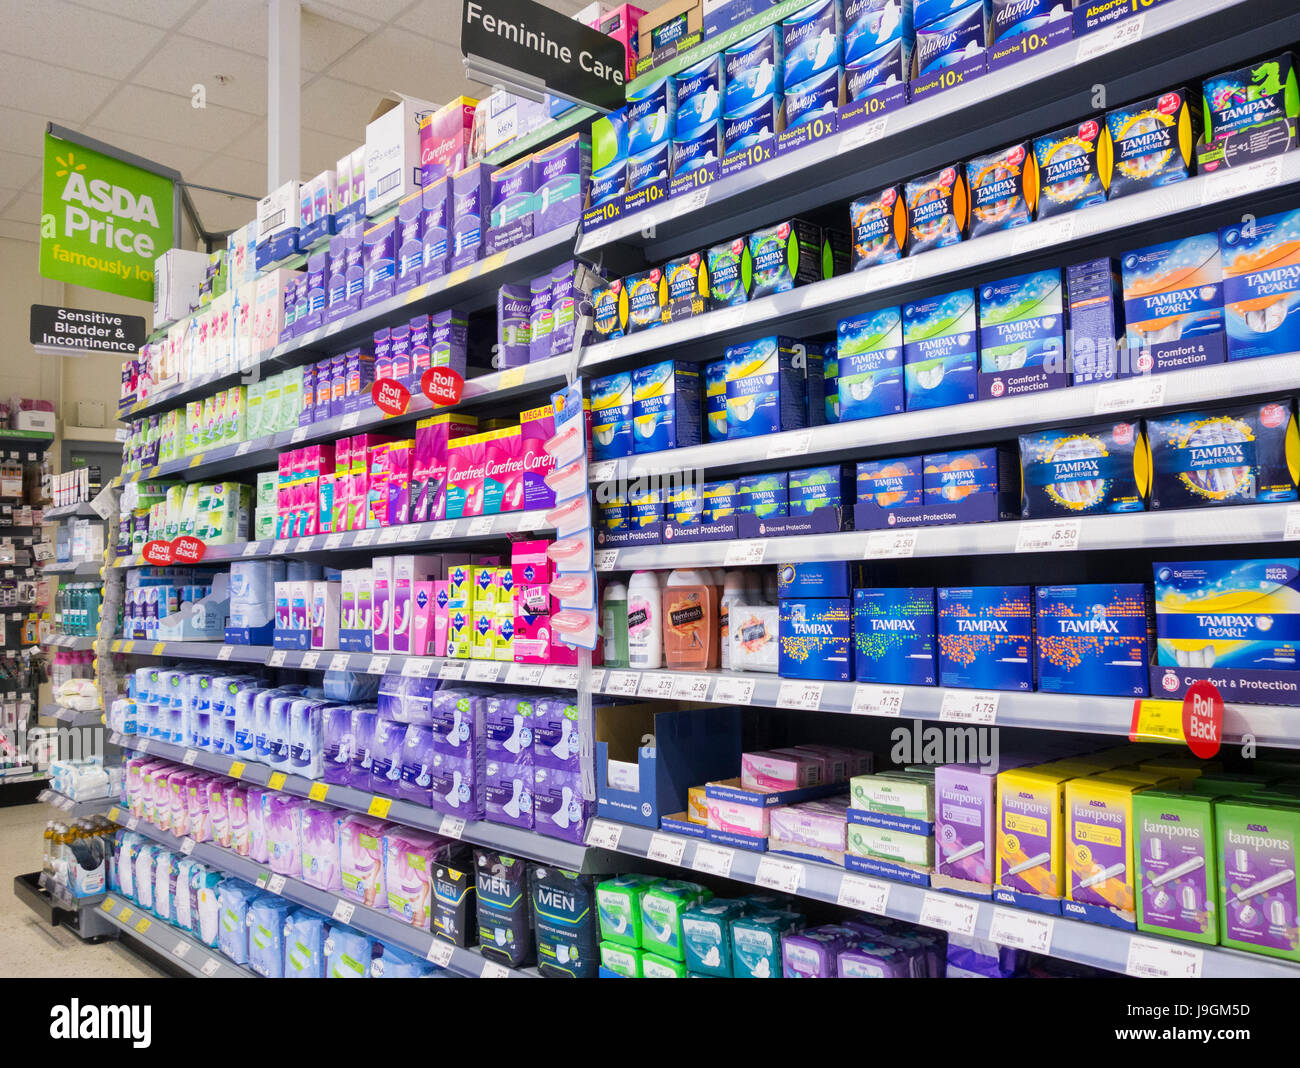 L'écran d'affichage de supermarché, les tampons Tampax, produits féminin. UK Banque D'Images